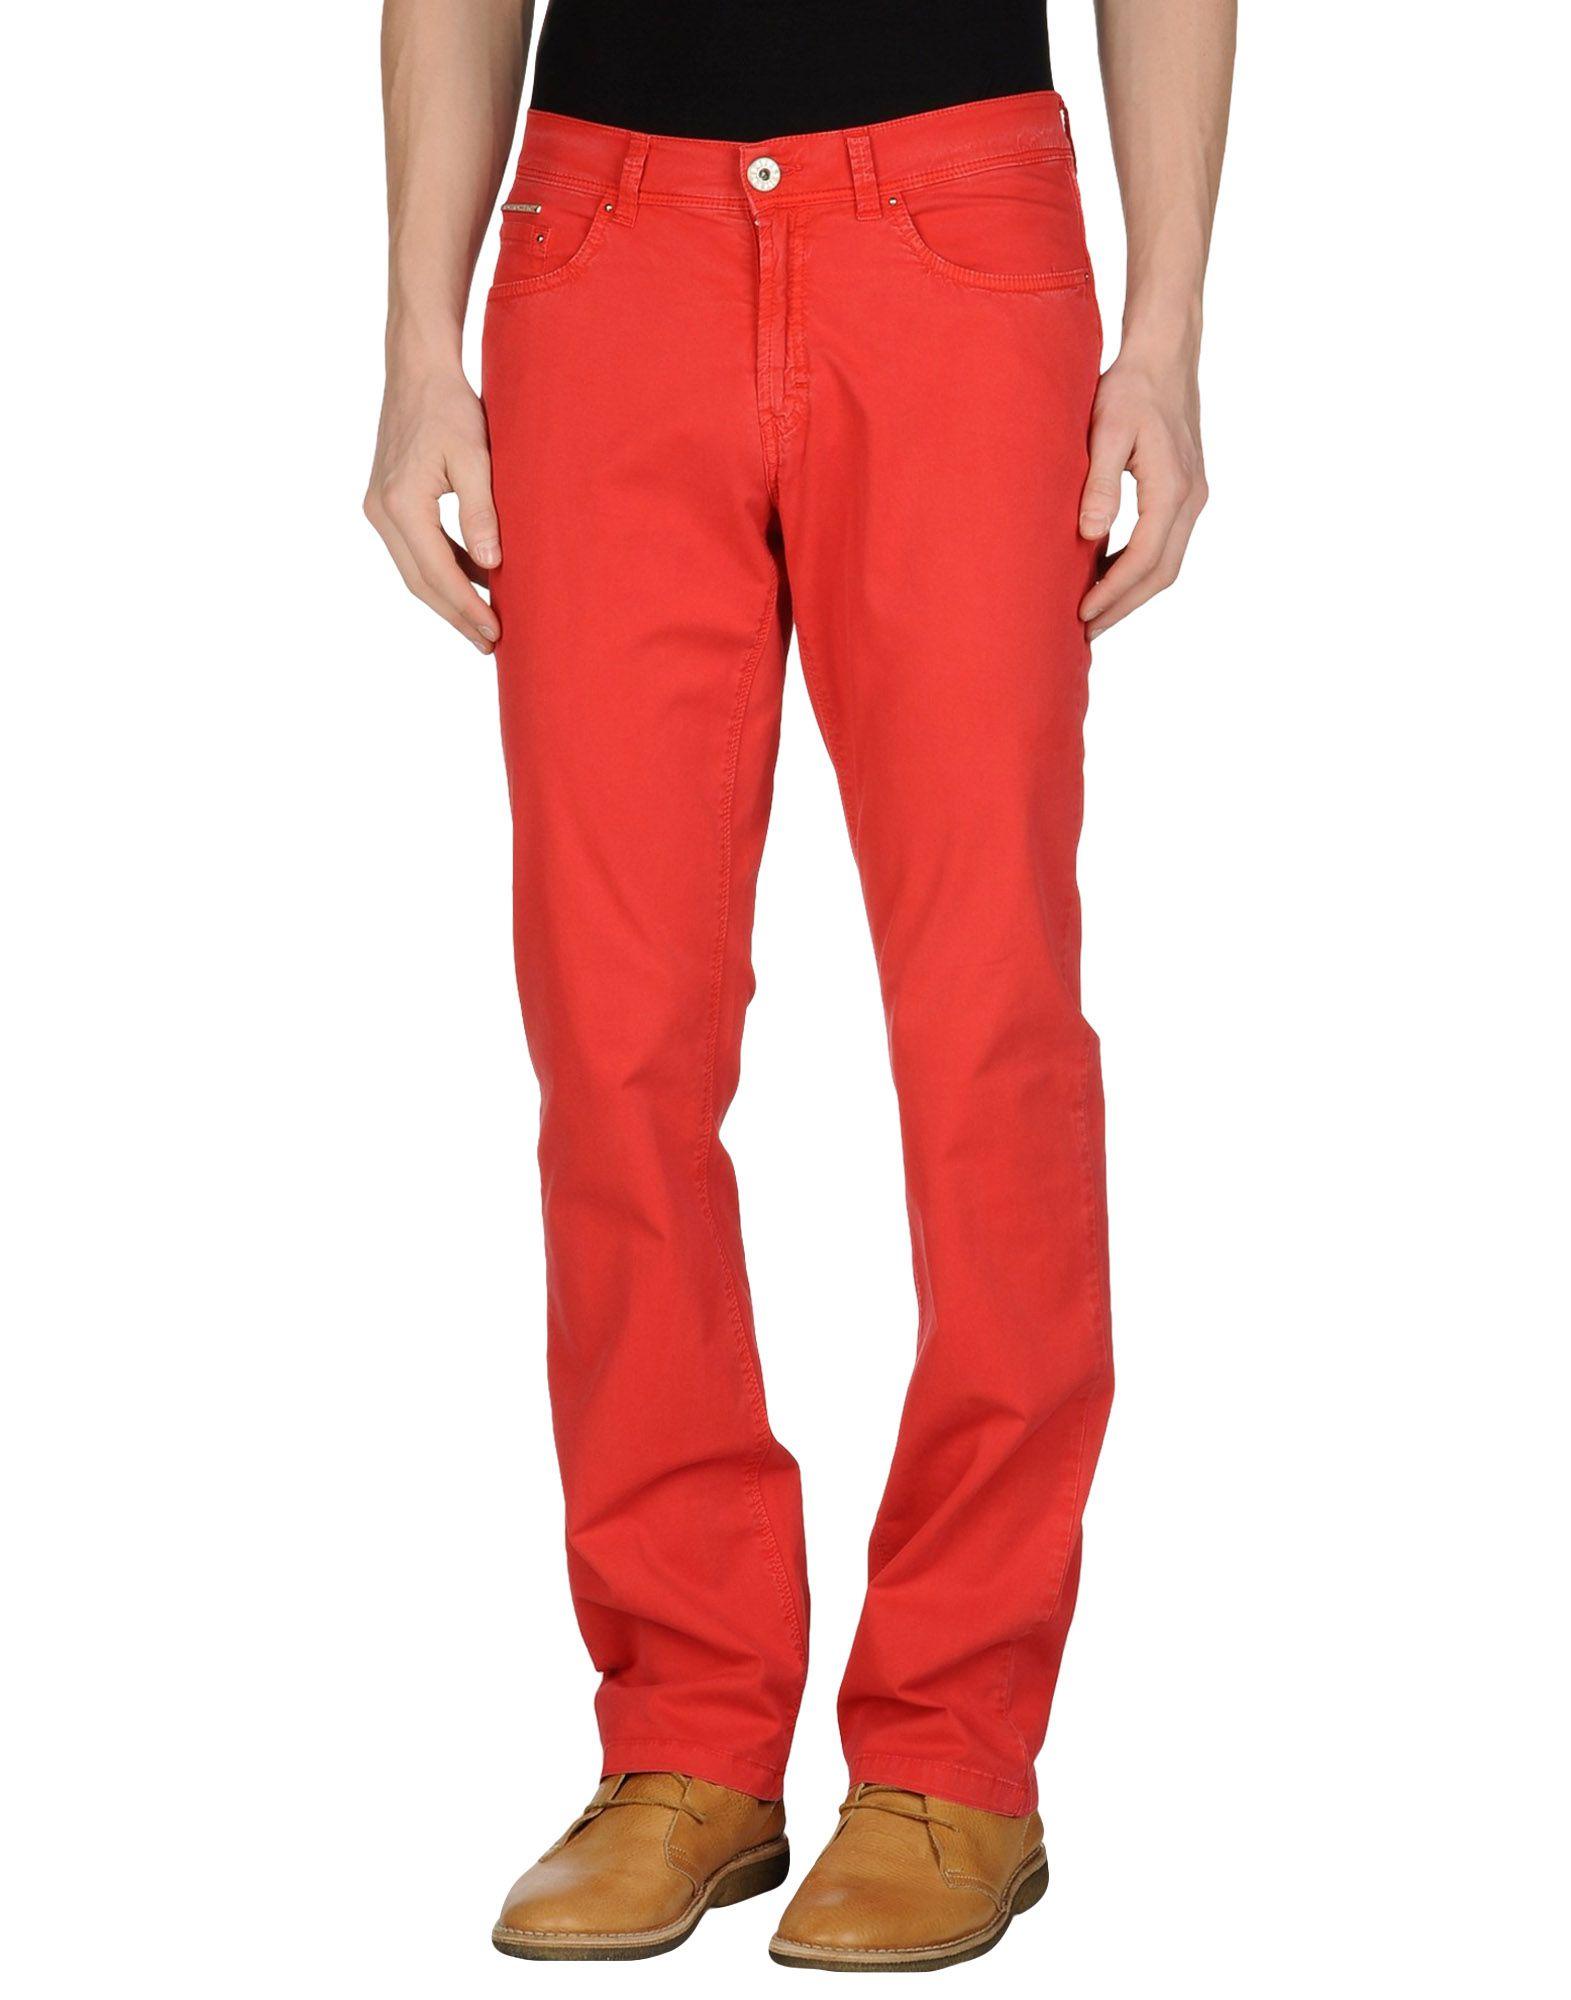 Pantalone modello jeans arancione